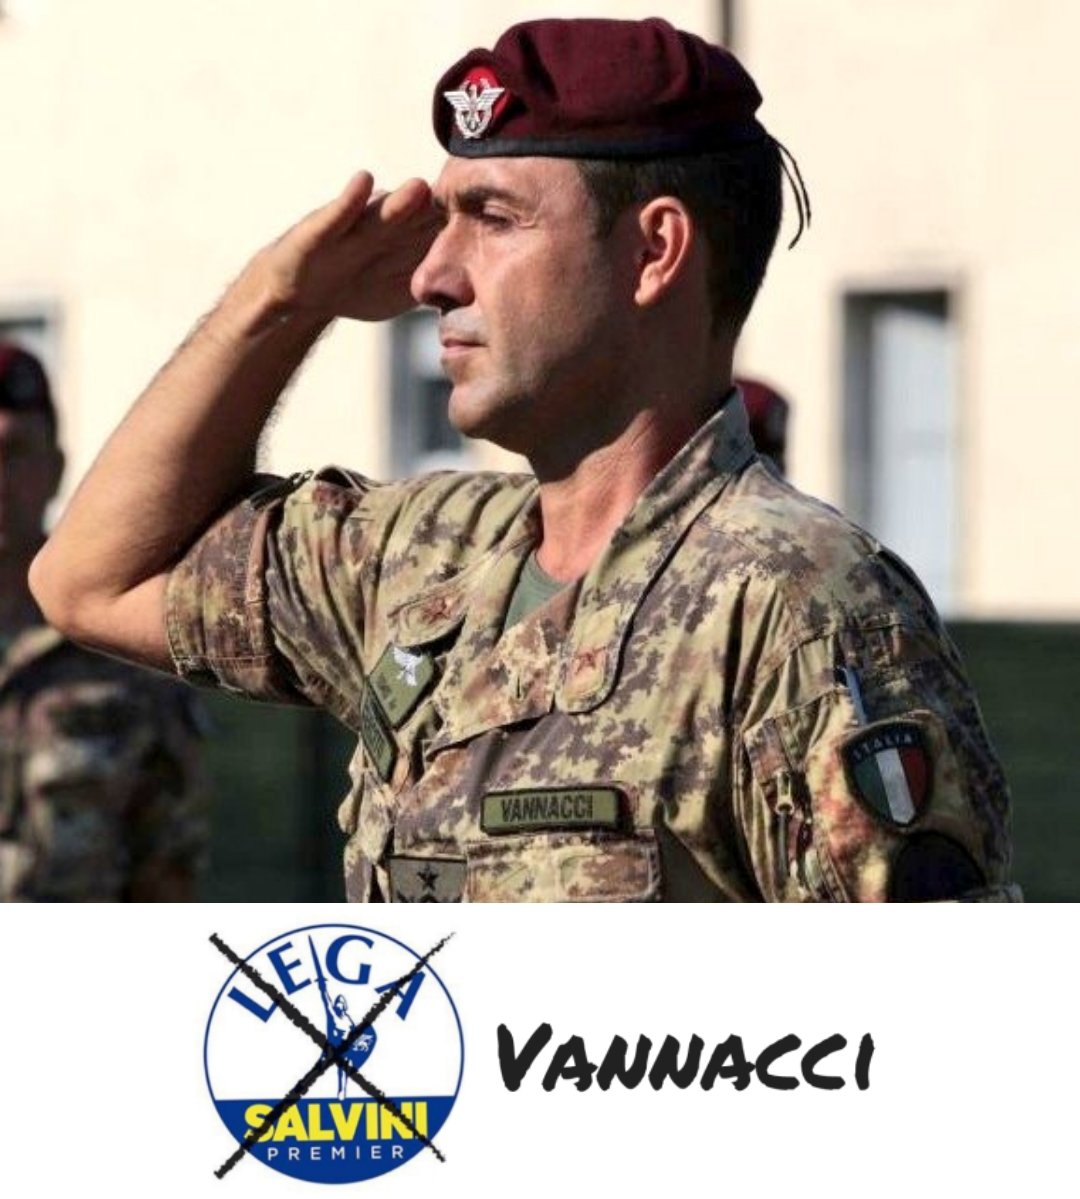 Ufficiale: il generale #Vannacci sarà candidato per la #Lega alle Elezioni Europee in tutte le circoscrizioni